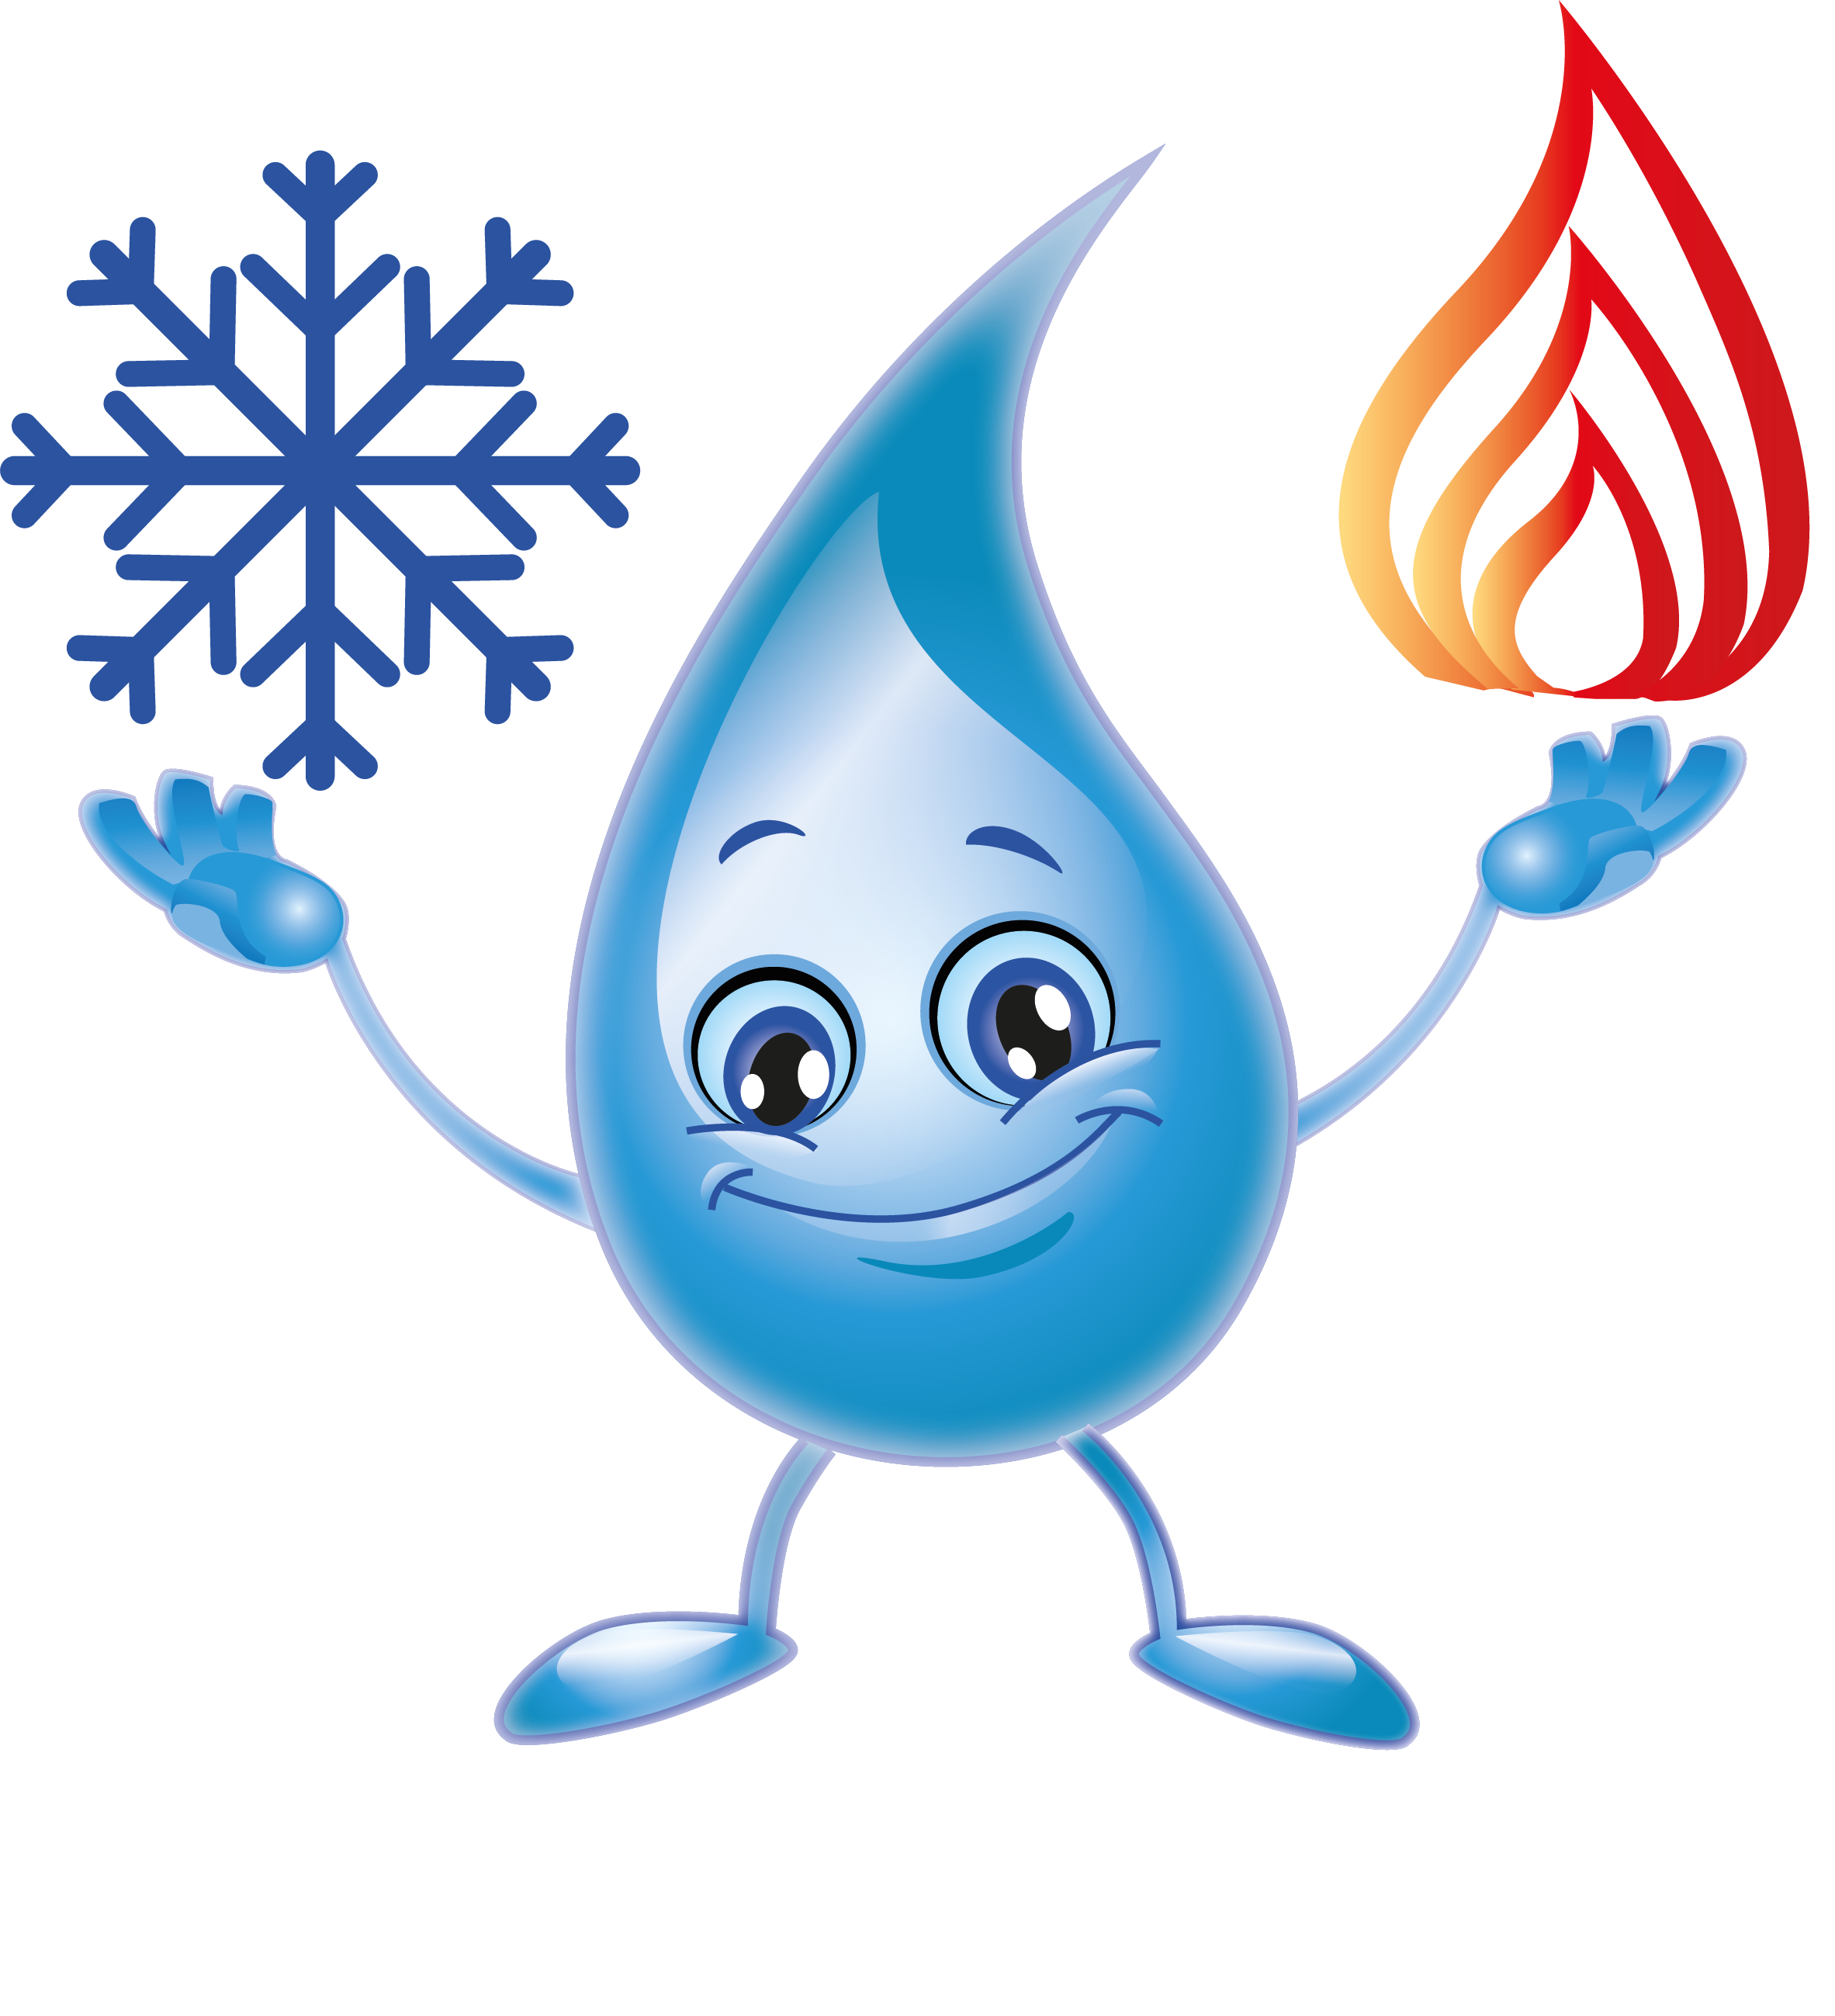 Logo Enault Plomberie